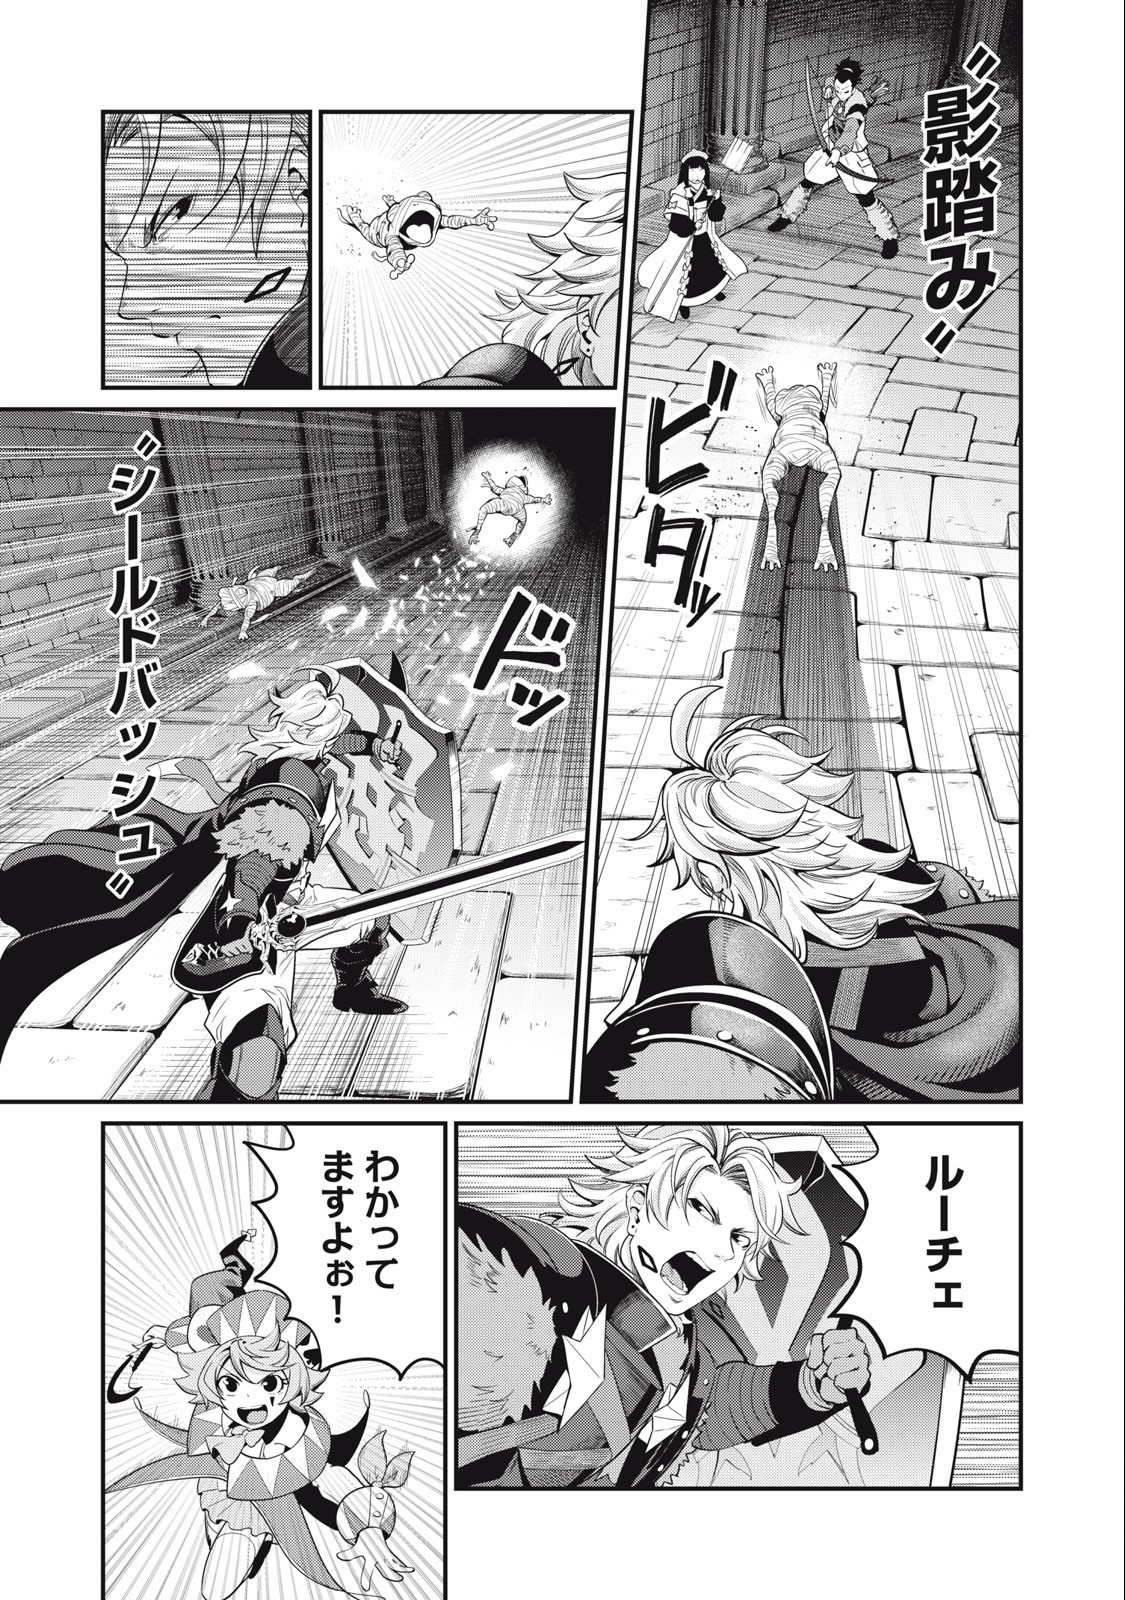 追放された転生重騎士はゲーム知識で無双する 第51話 - Page 7